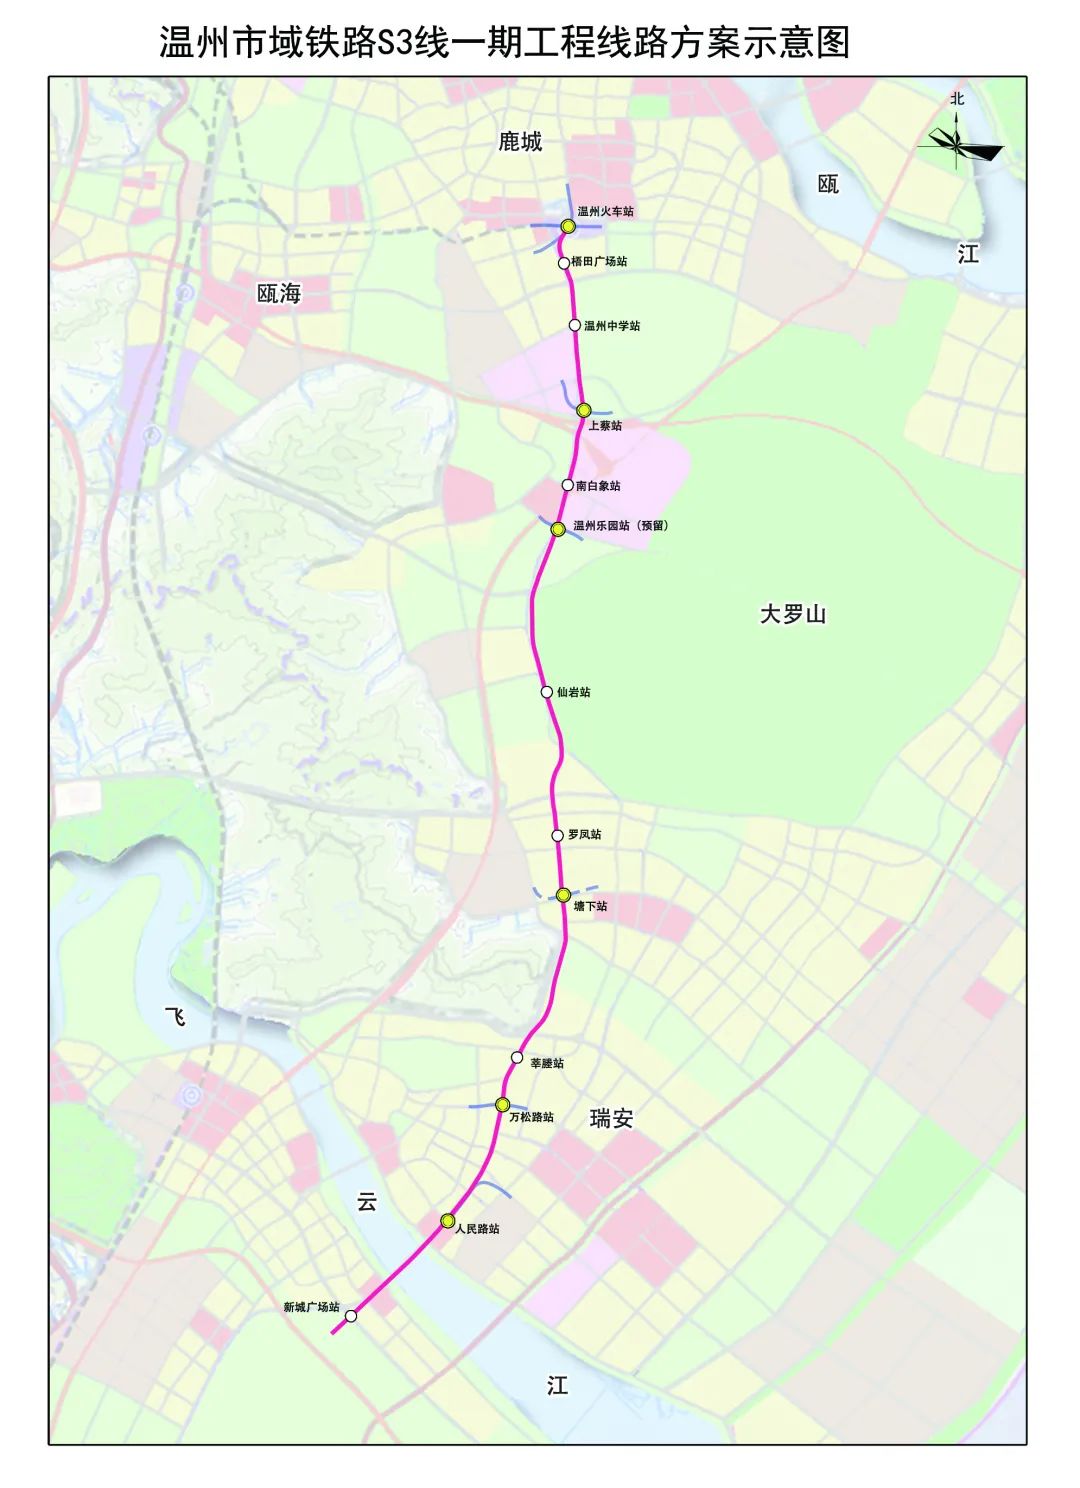 澎湃号>温州发布> 注:温州市域铁路s3 线一期工程总体为南北走向,北起